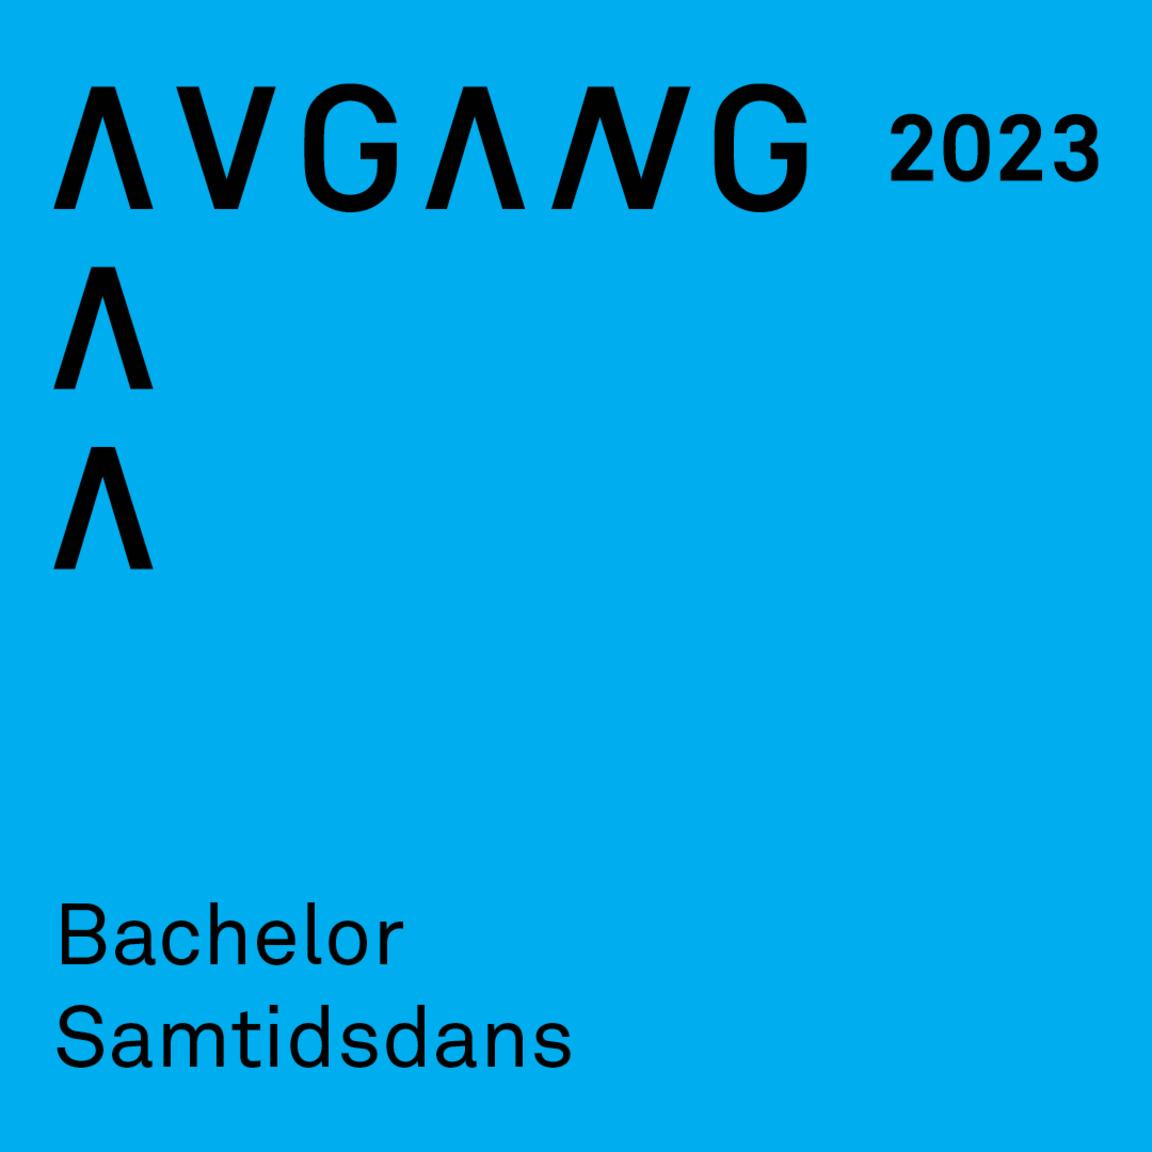 Avgang 2023: Bachelor samtidsdans